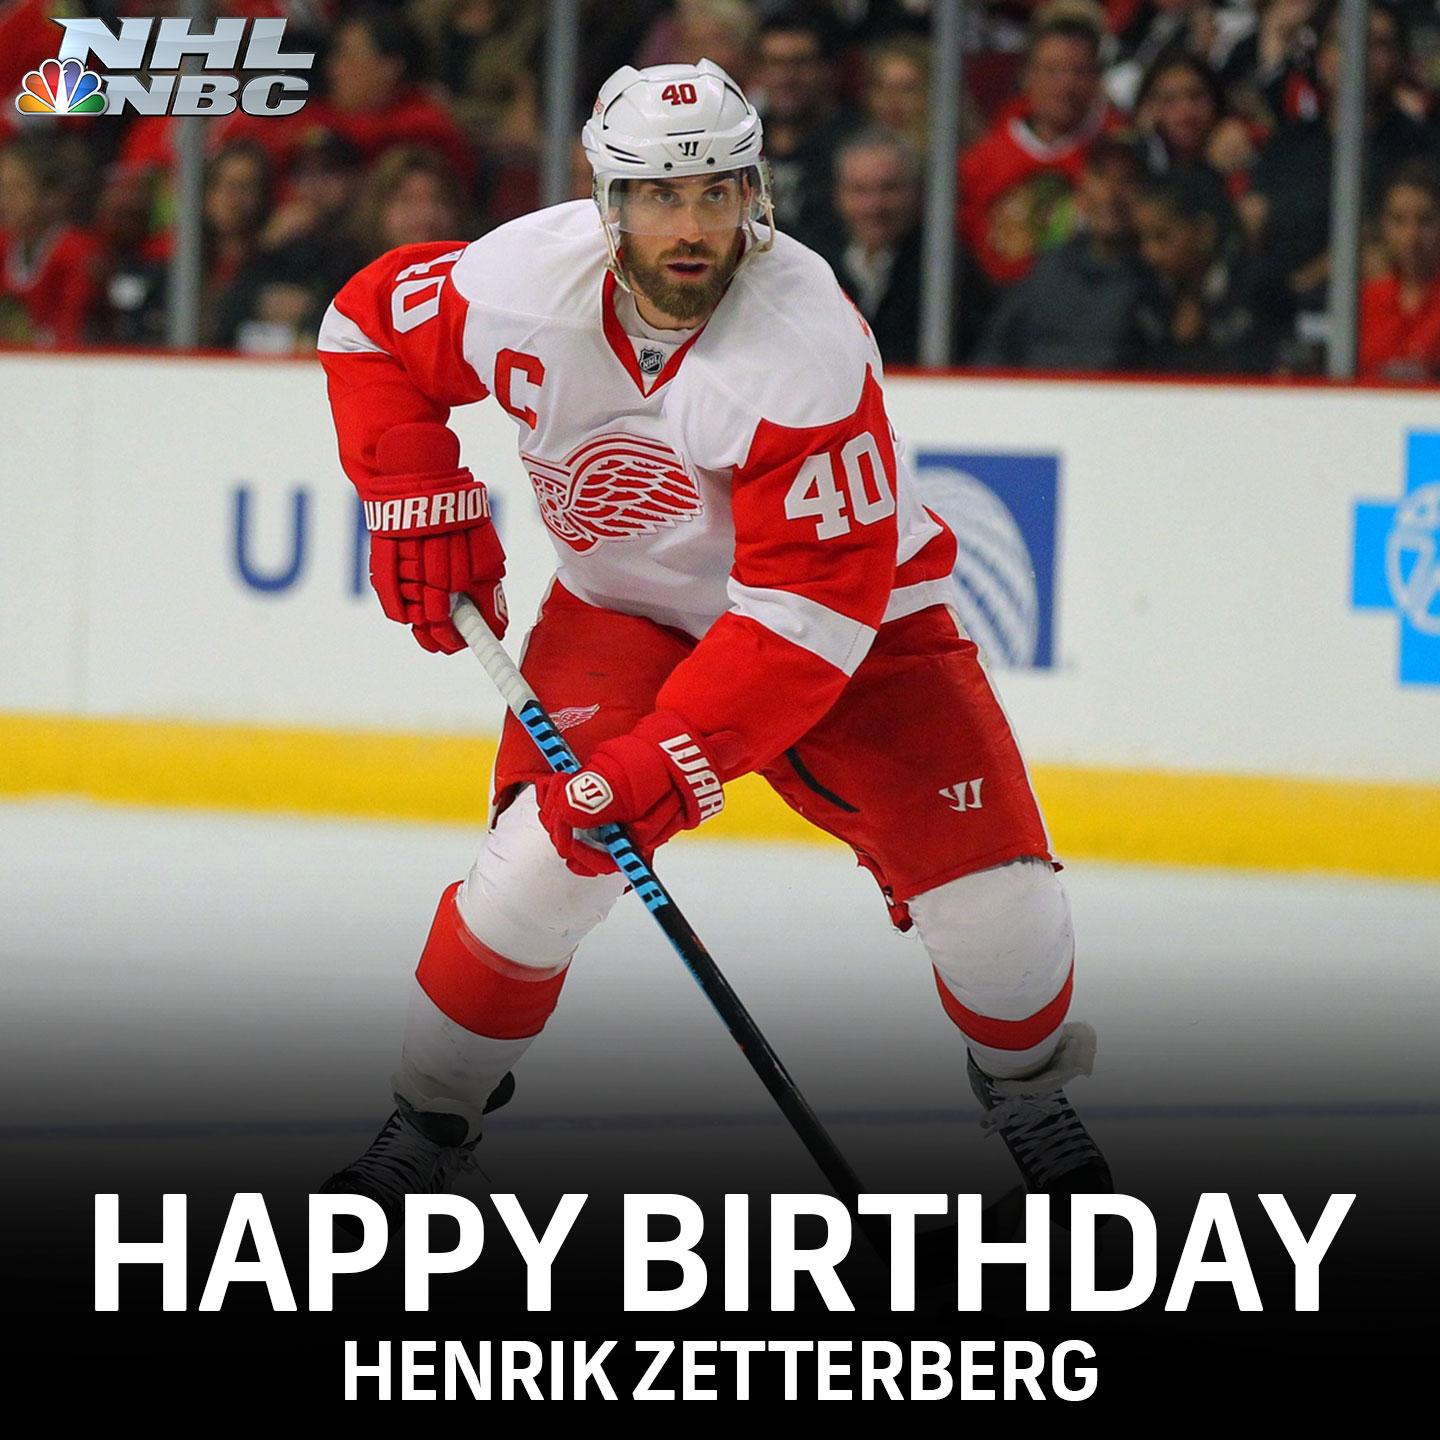 Happy Birthday Henrik Zetterberg! 